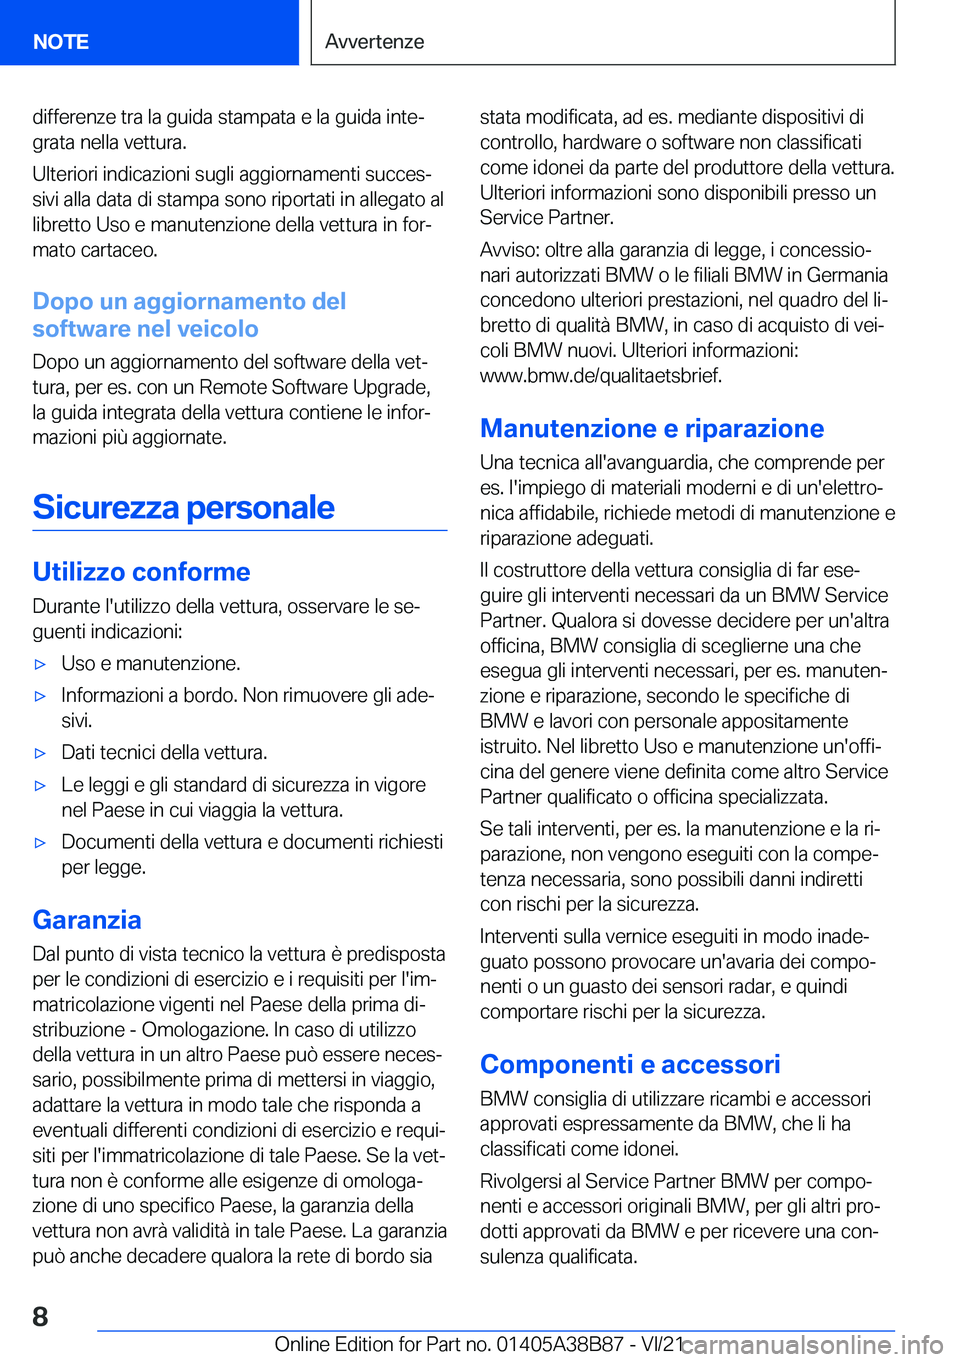 BMW M4 2022  Libretti Di Uso E manutenzione (in Italian) �d�i�f�f�e�r�e�n�z�e��t�r�a��l�a��g�u�i�d�a��s�t�a�m�p�a�t�a��e��l�a��g�u�i�d�a��i�n�t�eª�g�r�a�t�a��n�e�l�l�a��v�e�t�t�u�r�a�.
�U�l�t�e�r�i�o�r�i��i�n�d�i�c�a�z�i�o�n�i��s�u�g�l�i��a�g